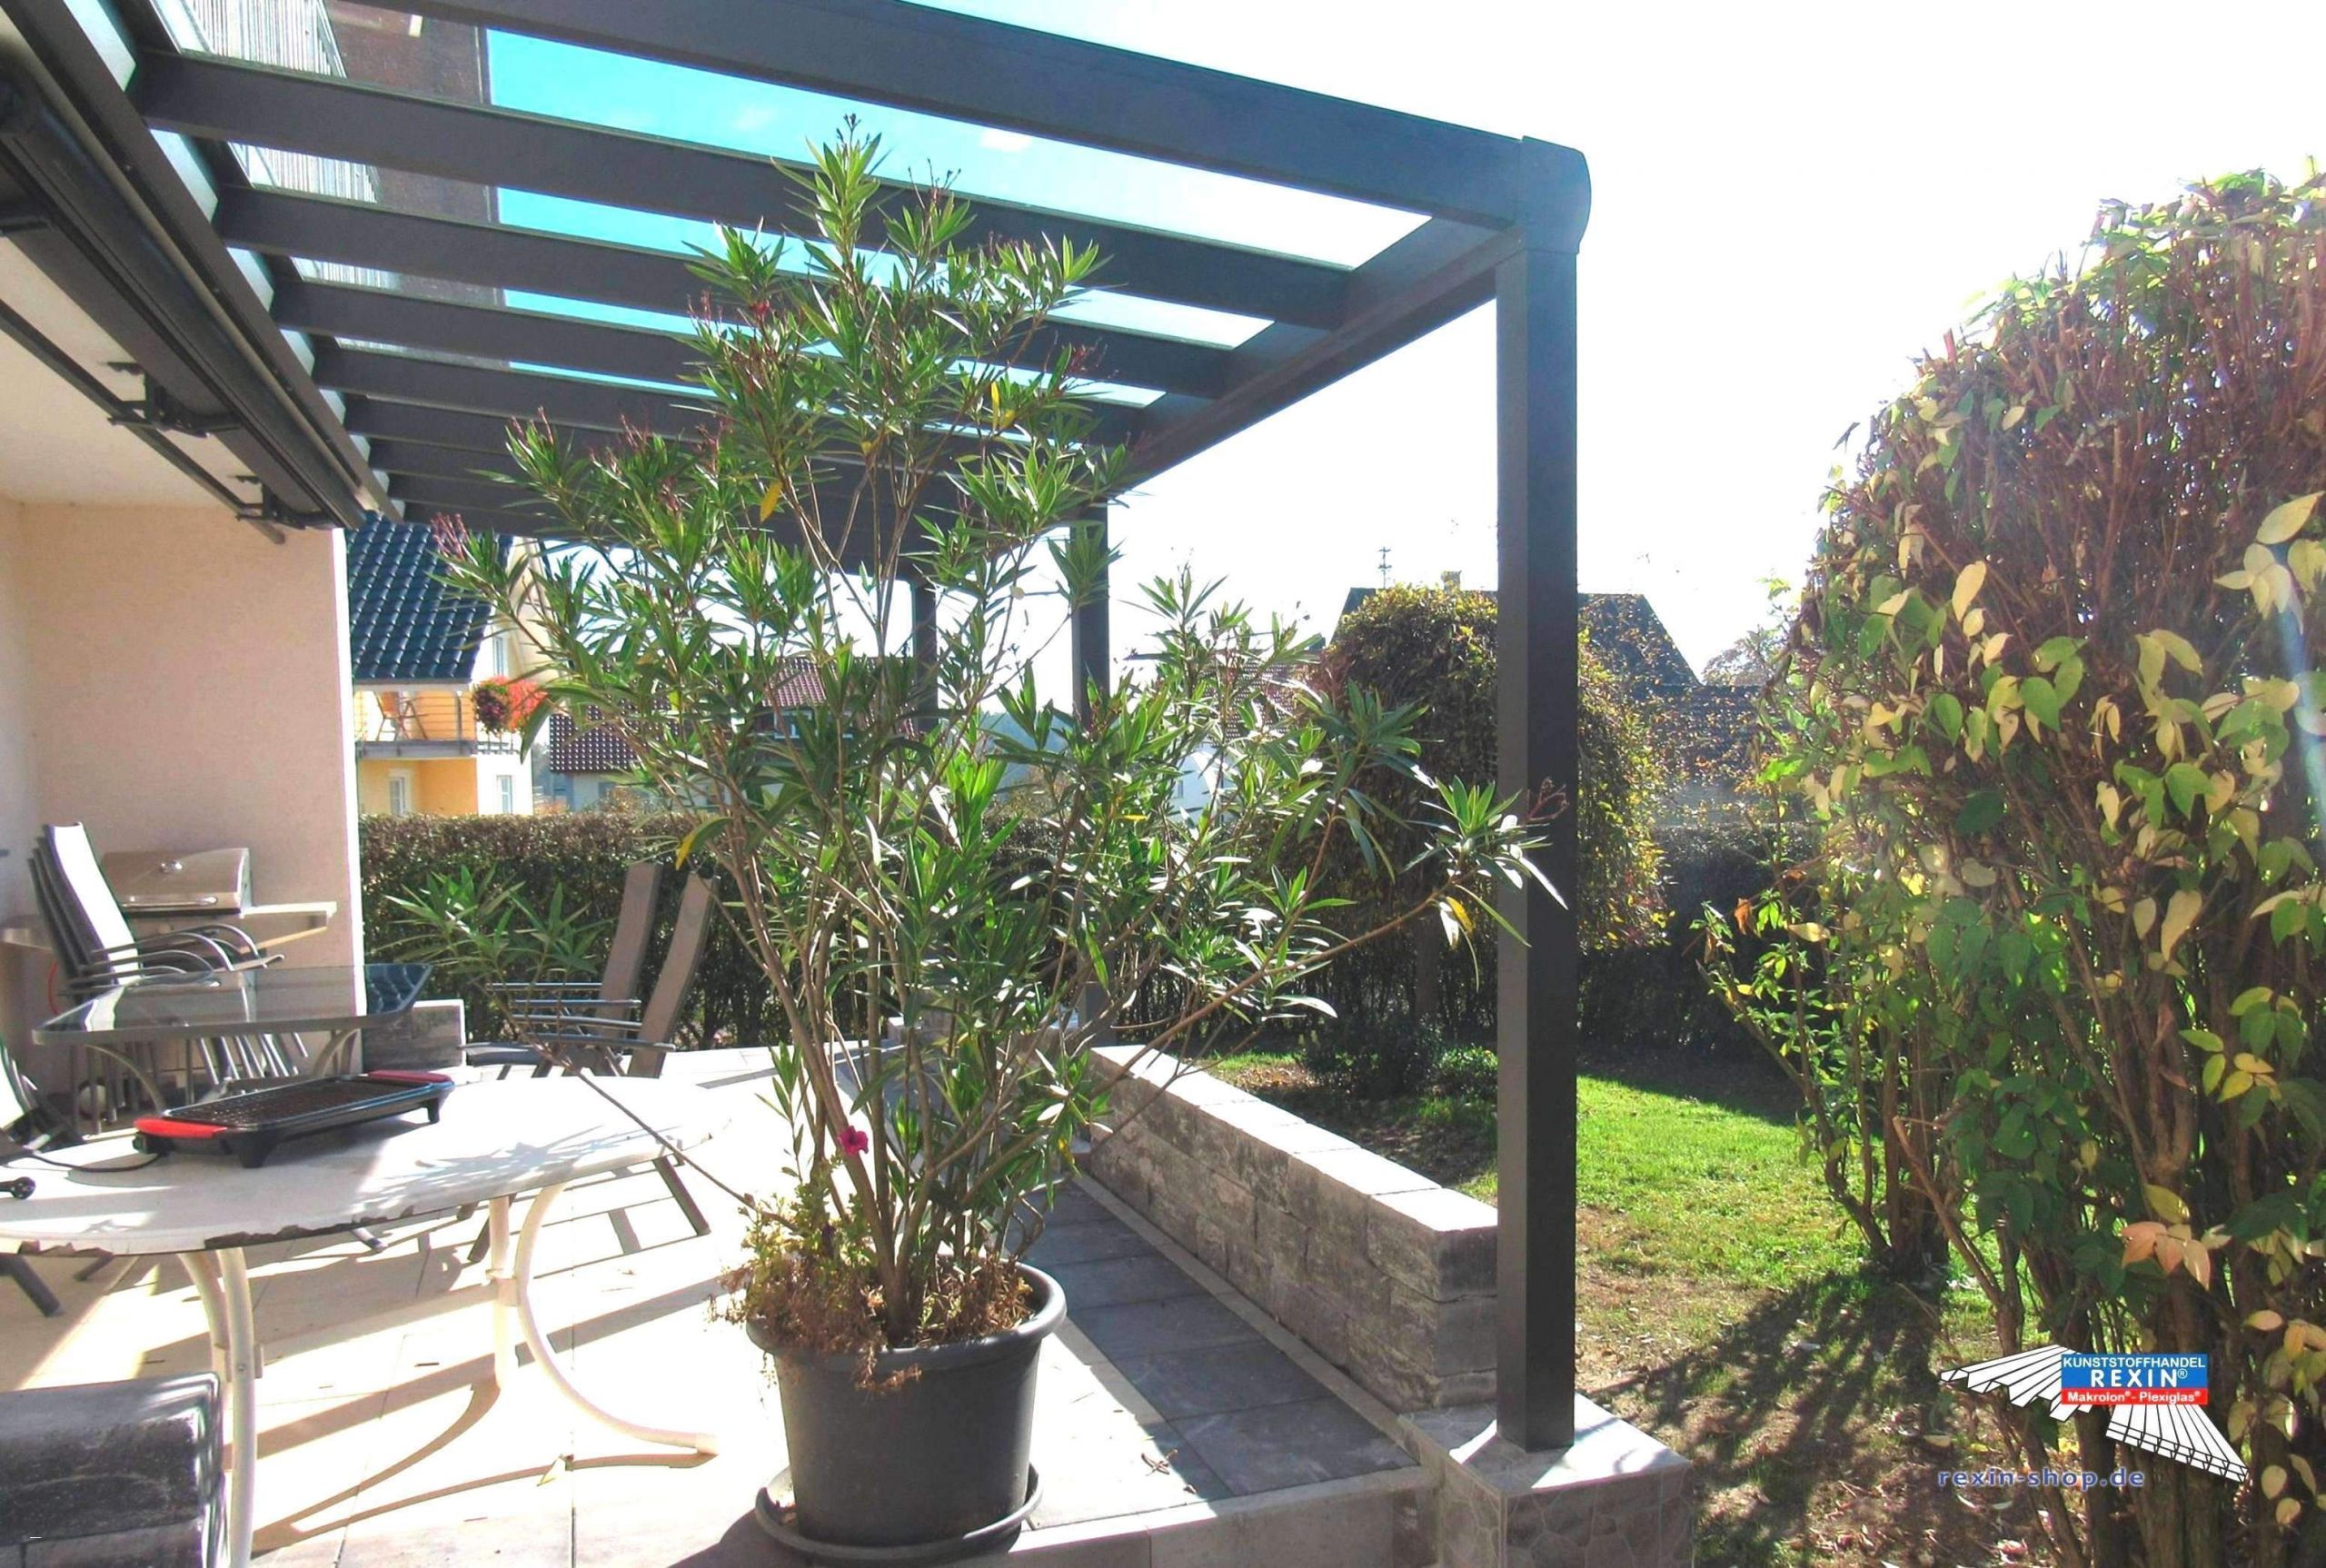 Terrassengestaltung Mit Pflanzen Inspirierend Wohnzimmer Pflanze Reizend Schlafzimmer Boxspringbett